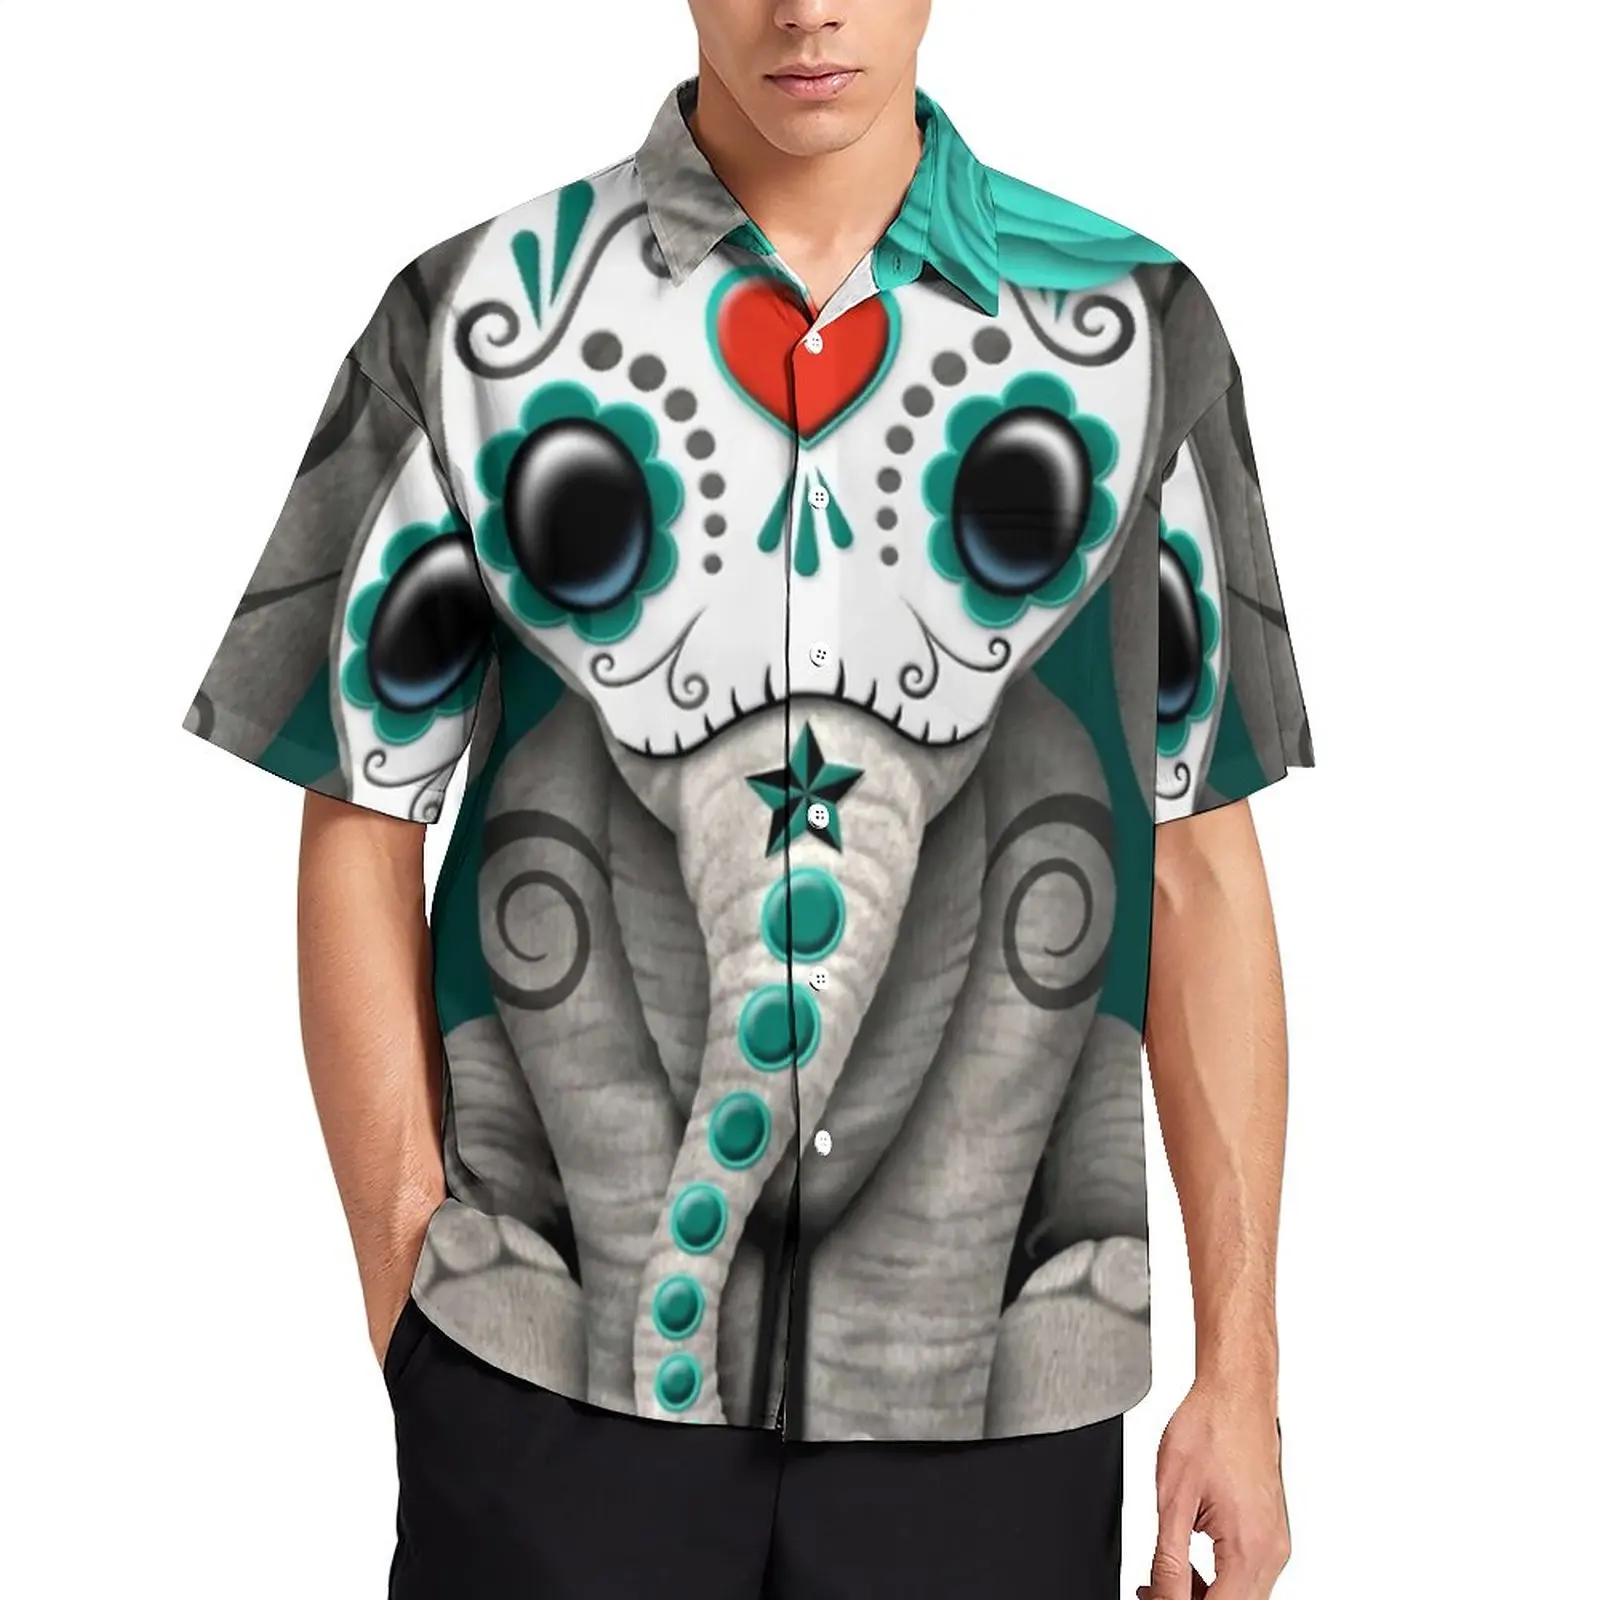 

Свободная рубашка с изображением сахара, черепа, слона, повседневные пляжные рубашки на день мертвецов, гавайский рисунок, Необычные блузки...